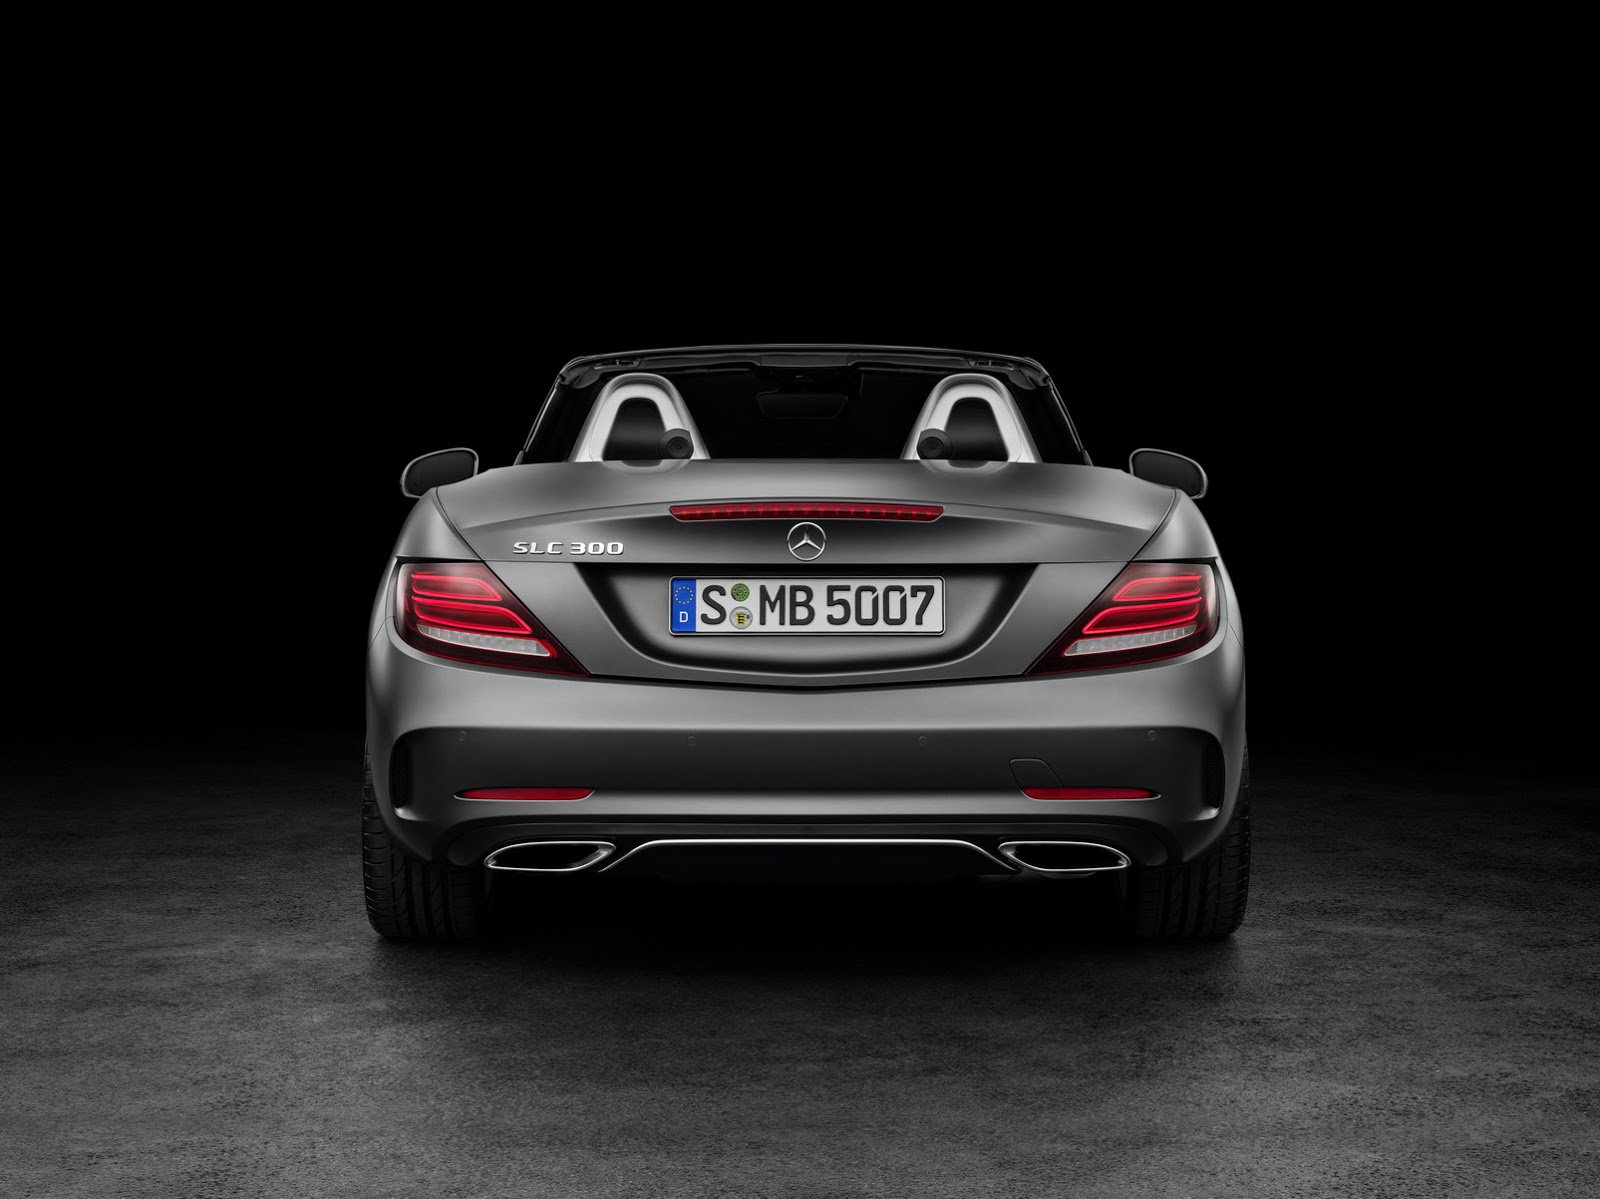 Zadní LED světla vůz opticky rozšiřují, Mercedes-Benz SLC.